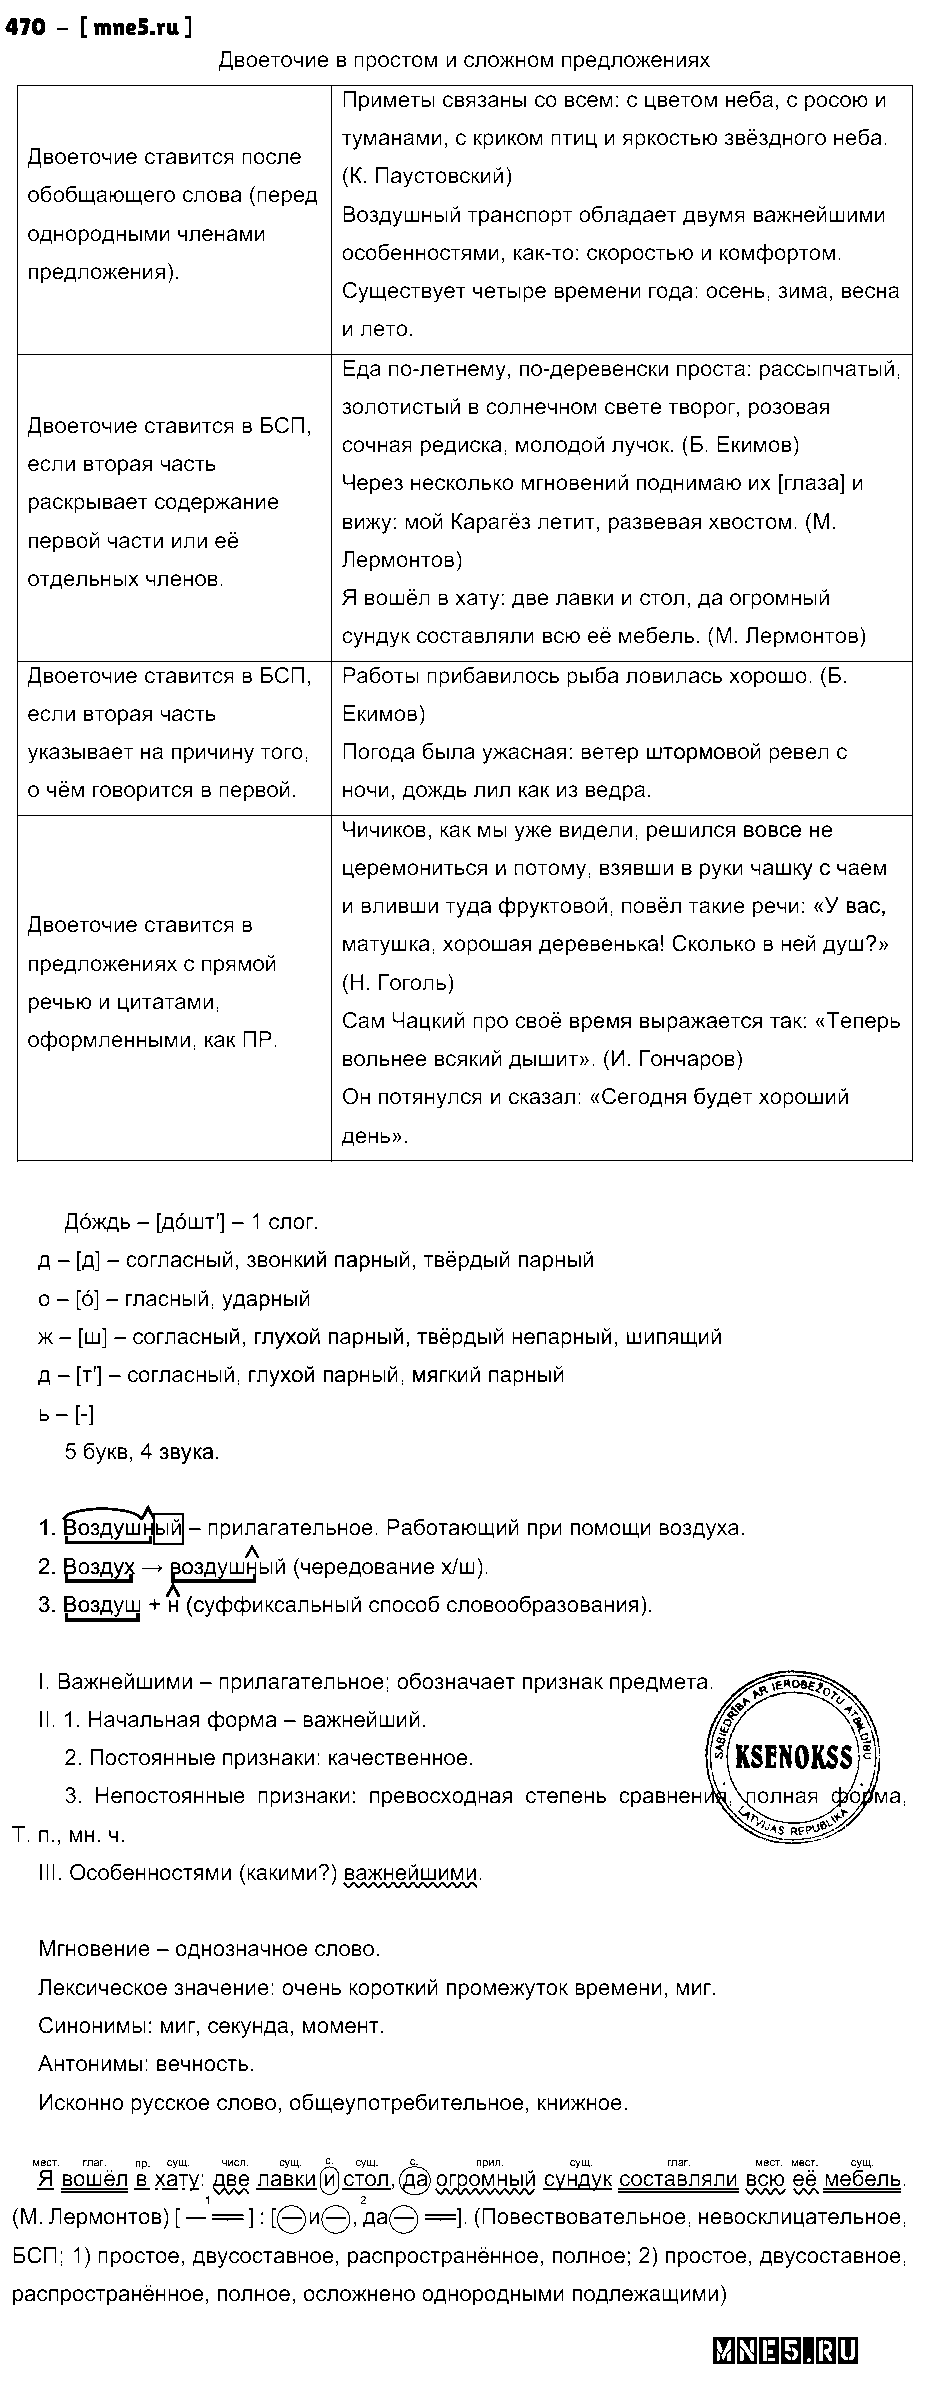 ГДЗ Русский язык 9 класс - 470